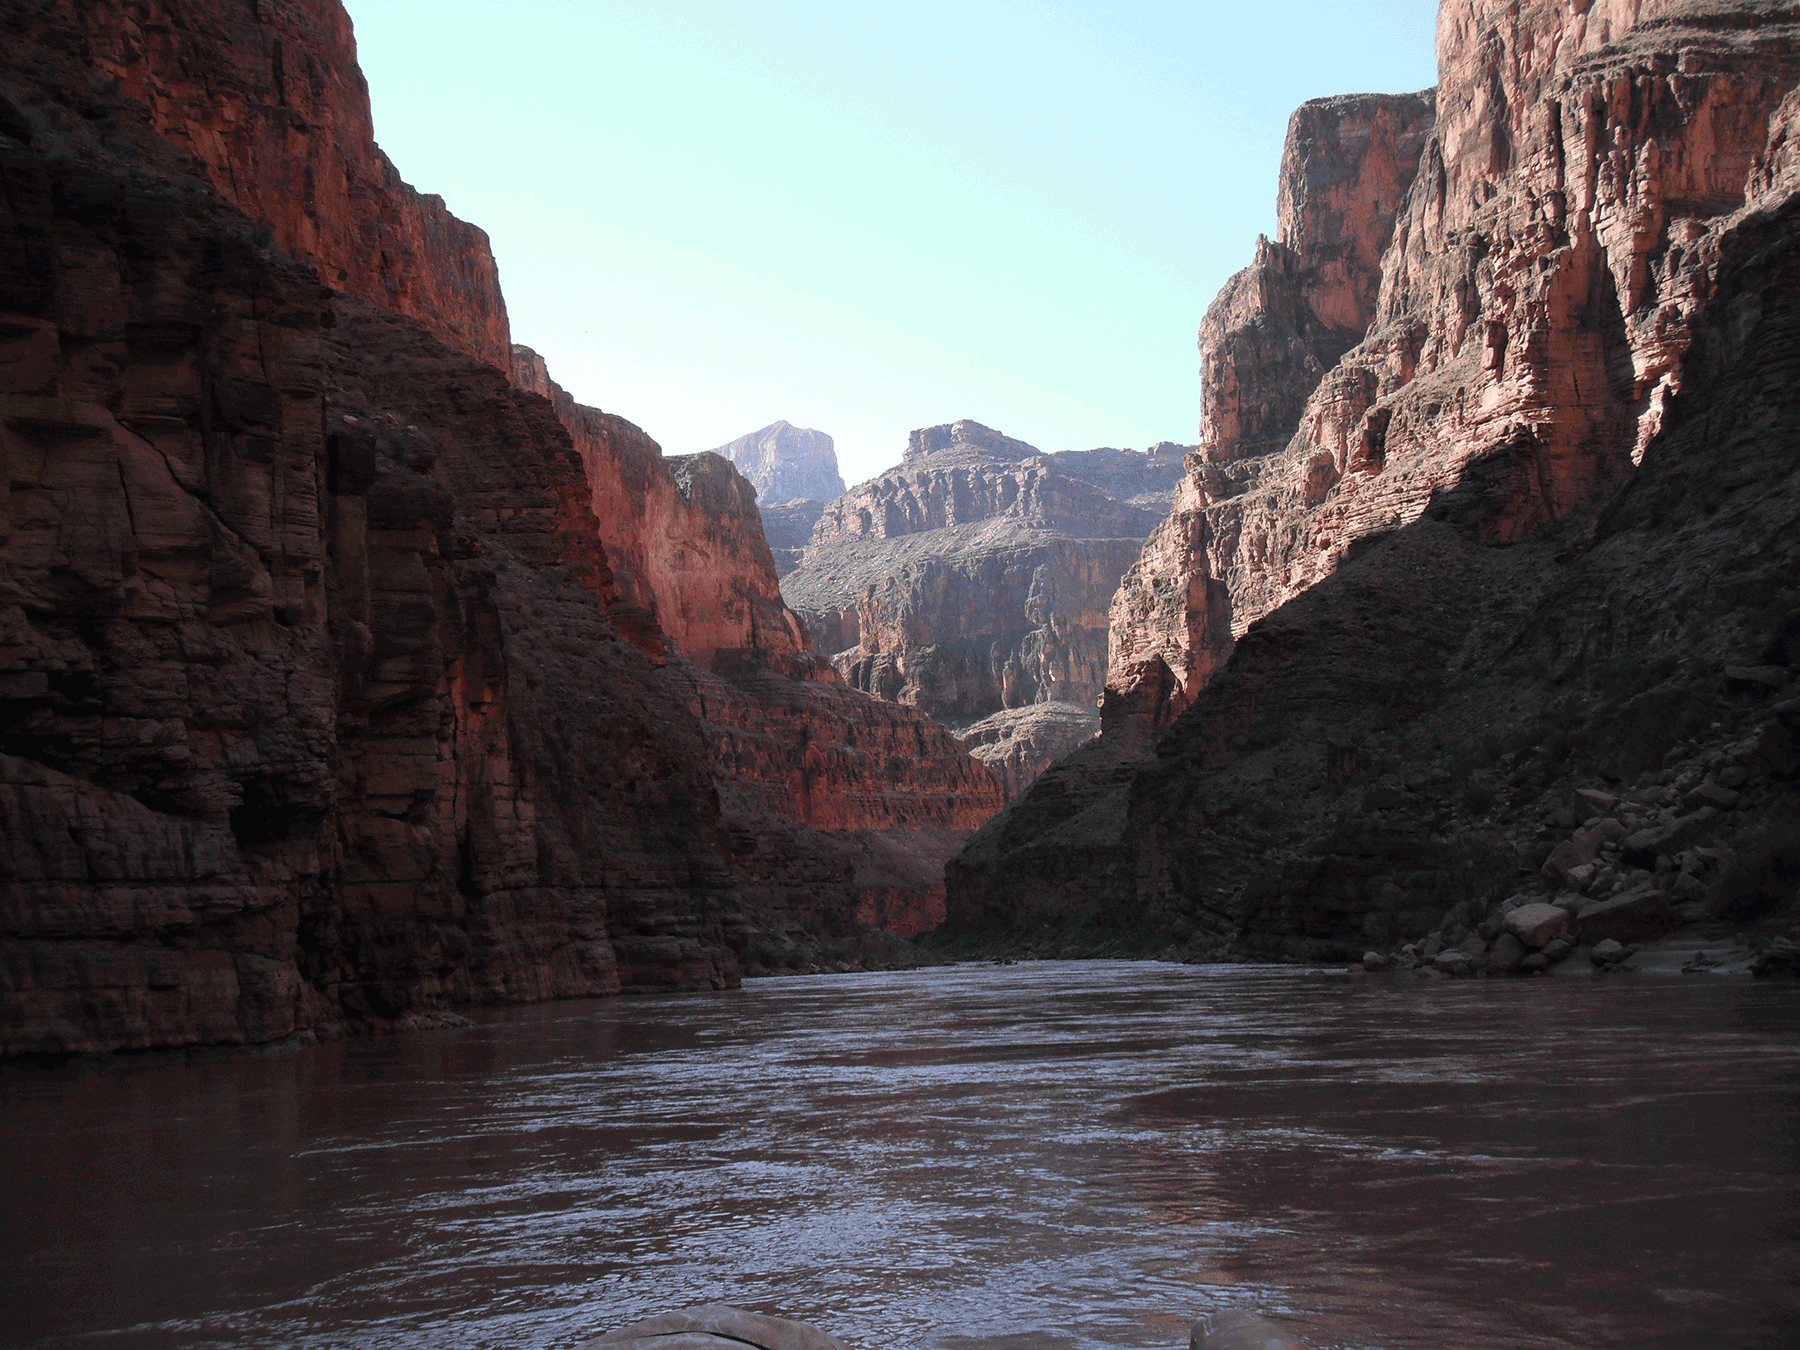  Colorado River in Grand Canyon 